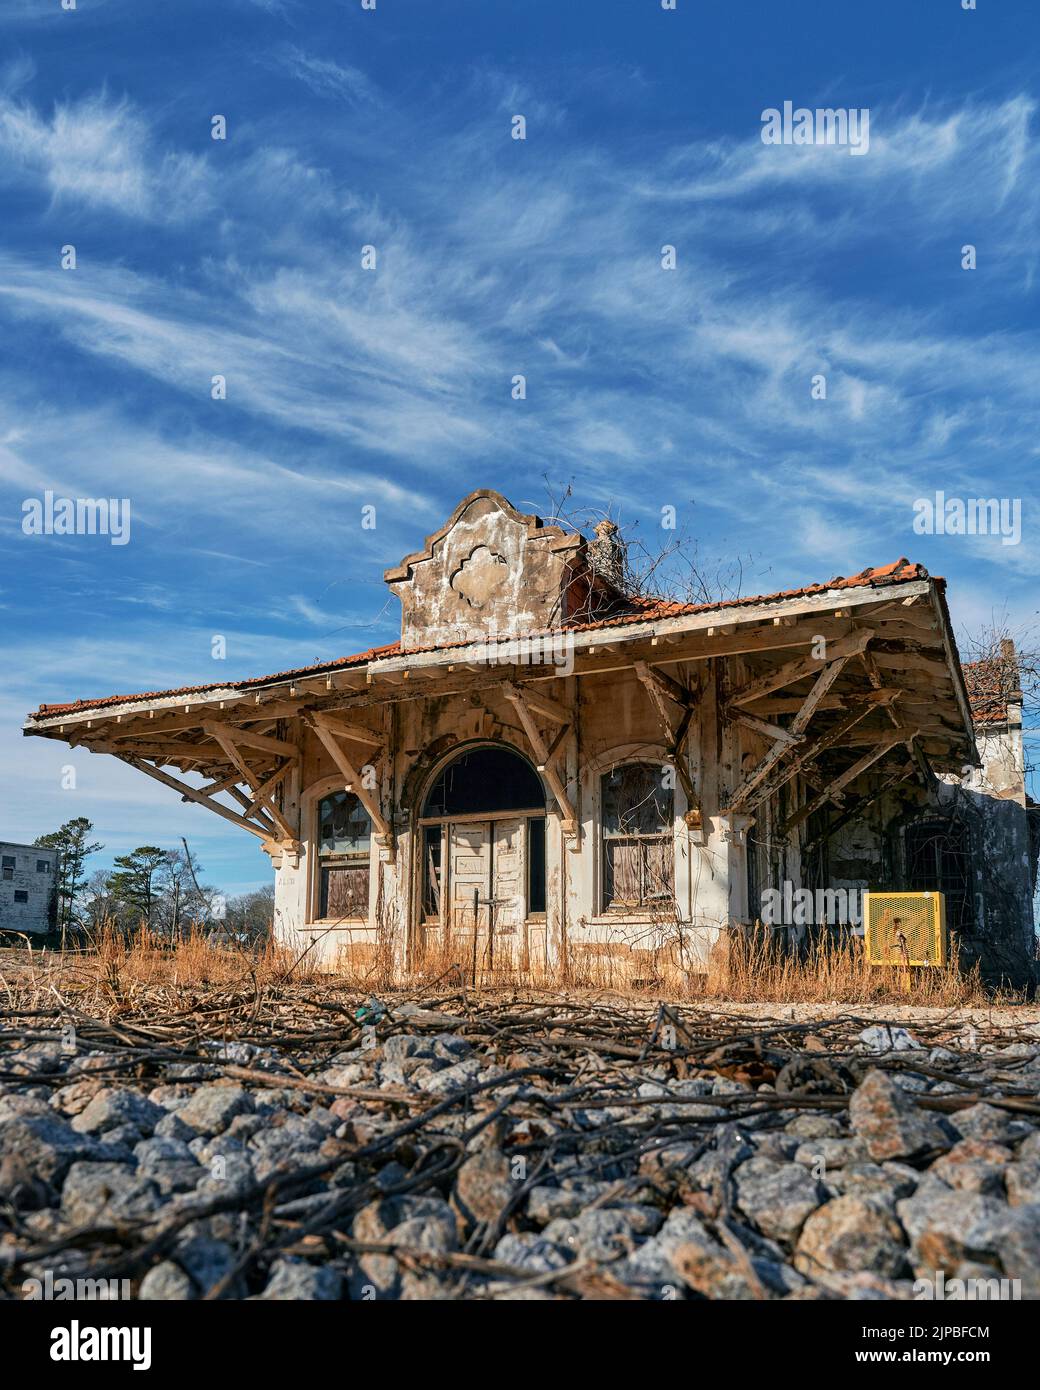 Wadley Alabama, EE.UU., estación de tren de época, una misión de la arquitectura de la estación de tren ahora está abandonado. Foto de stock